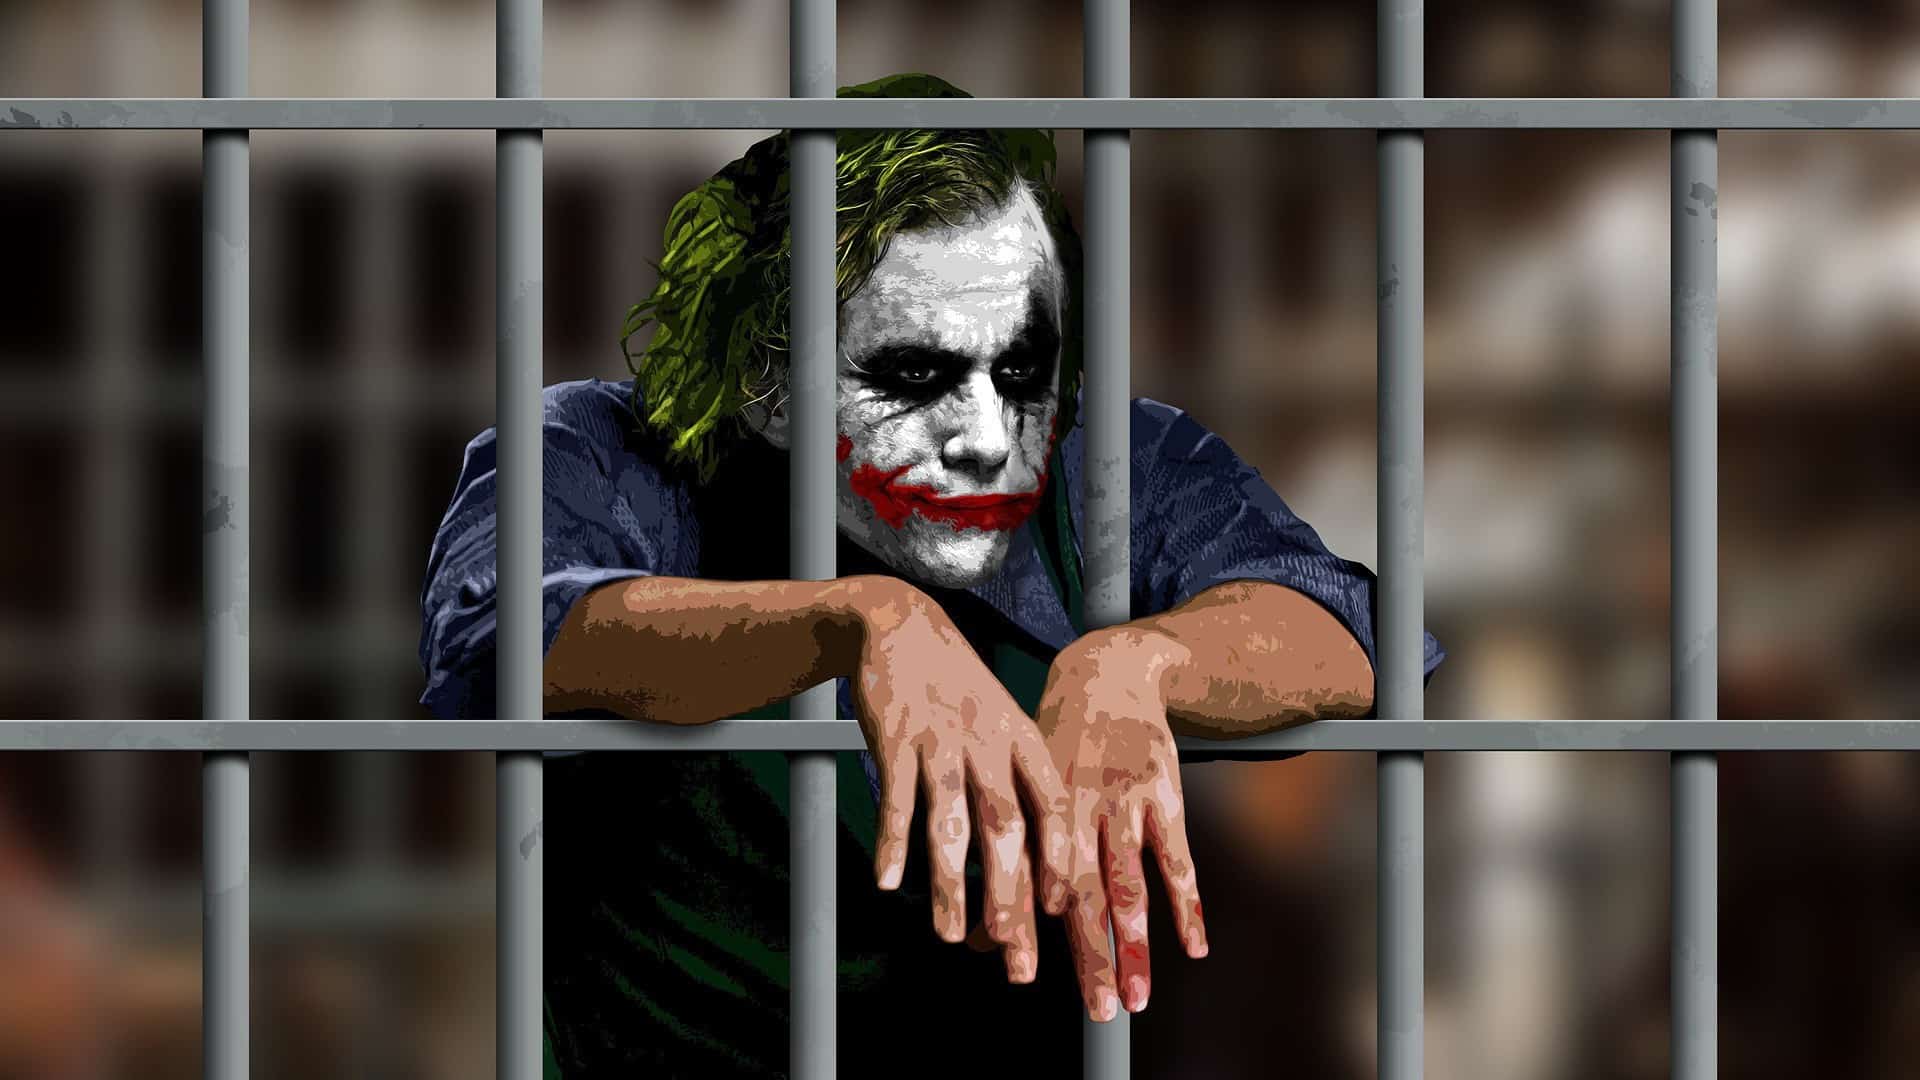 Joker in the jail